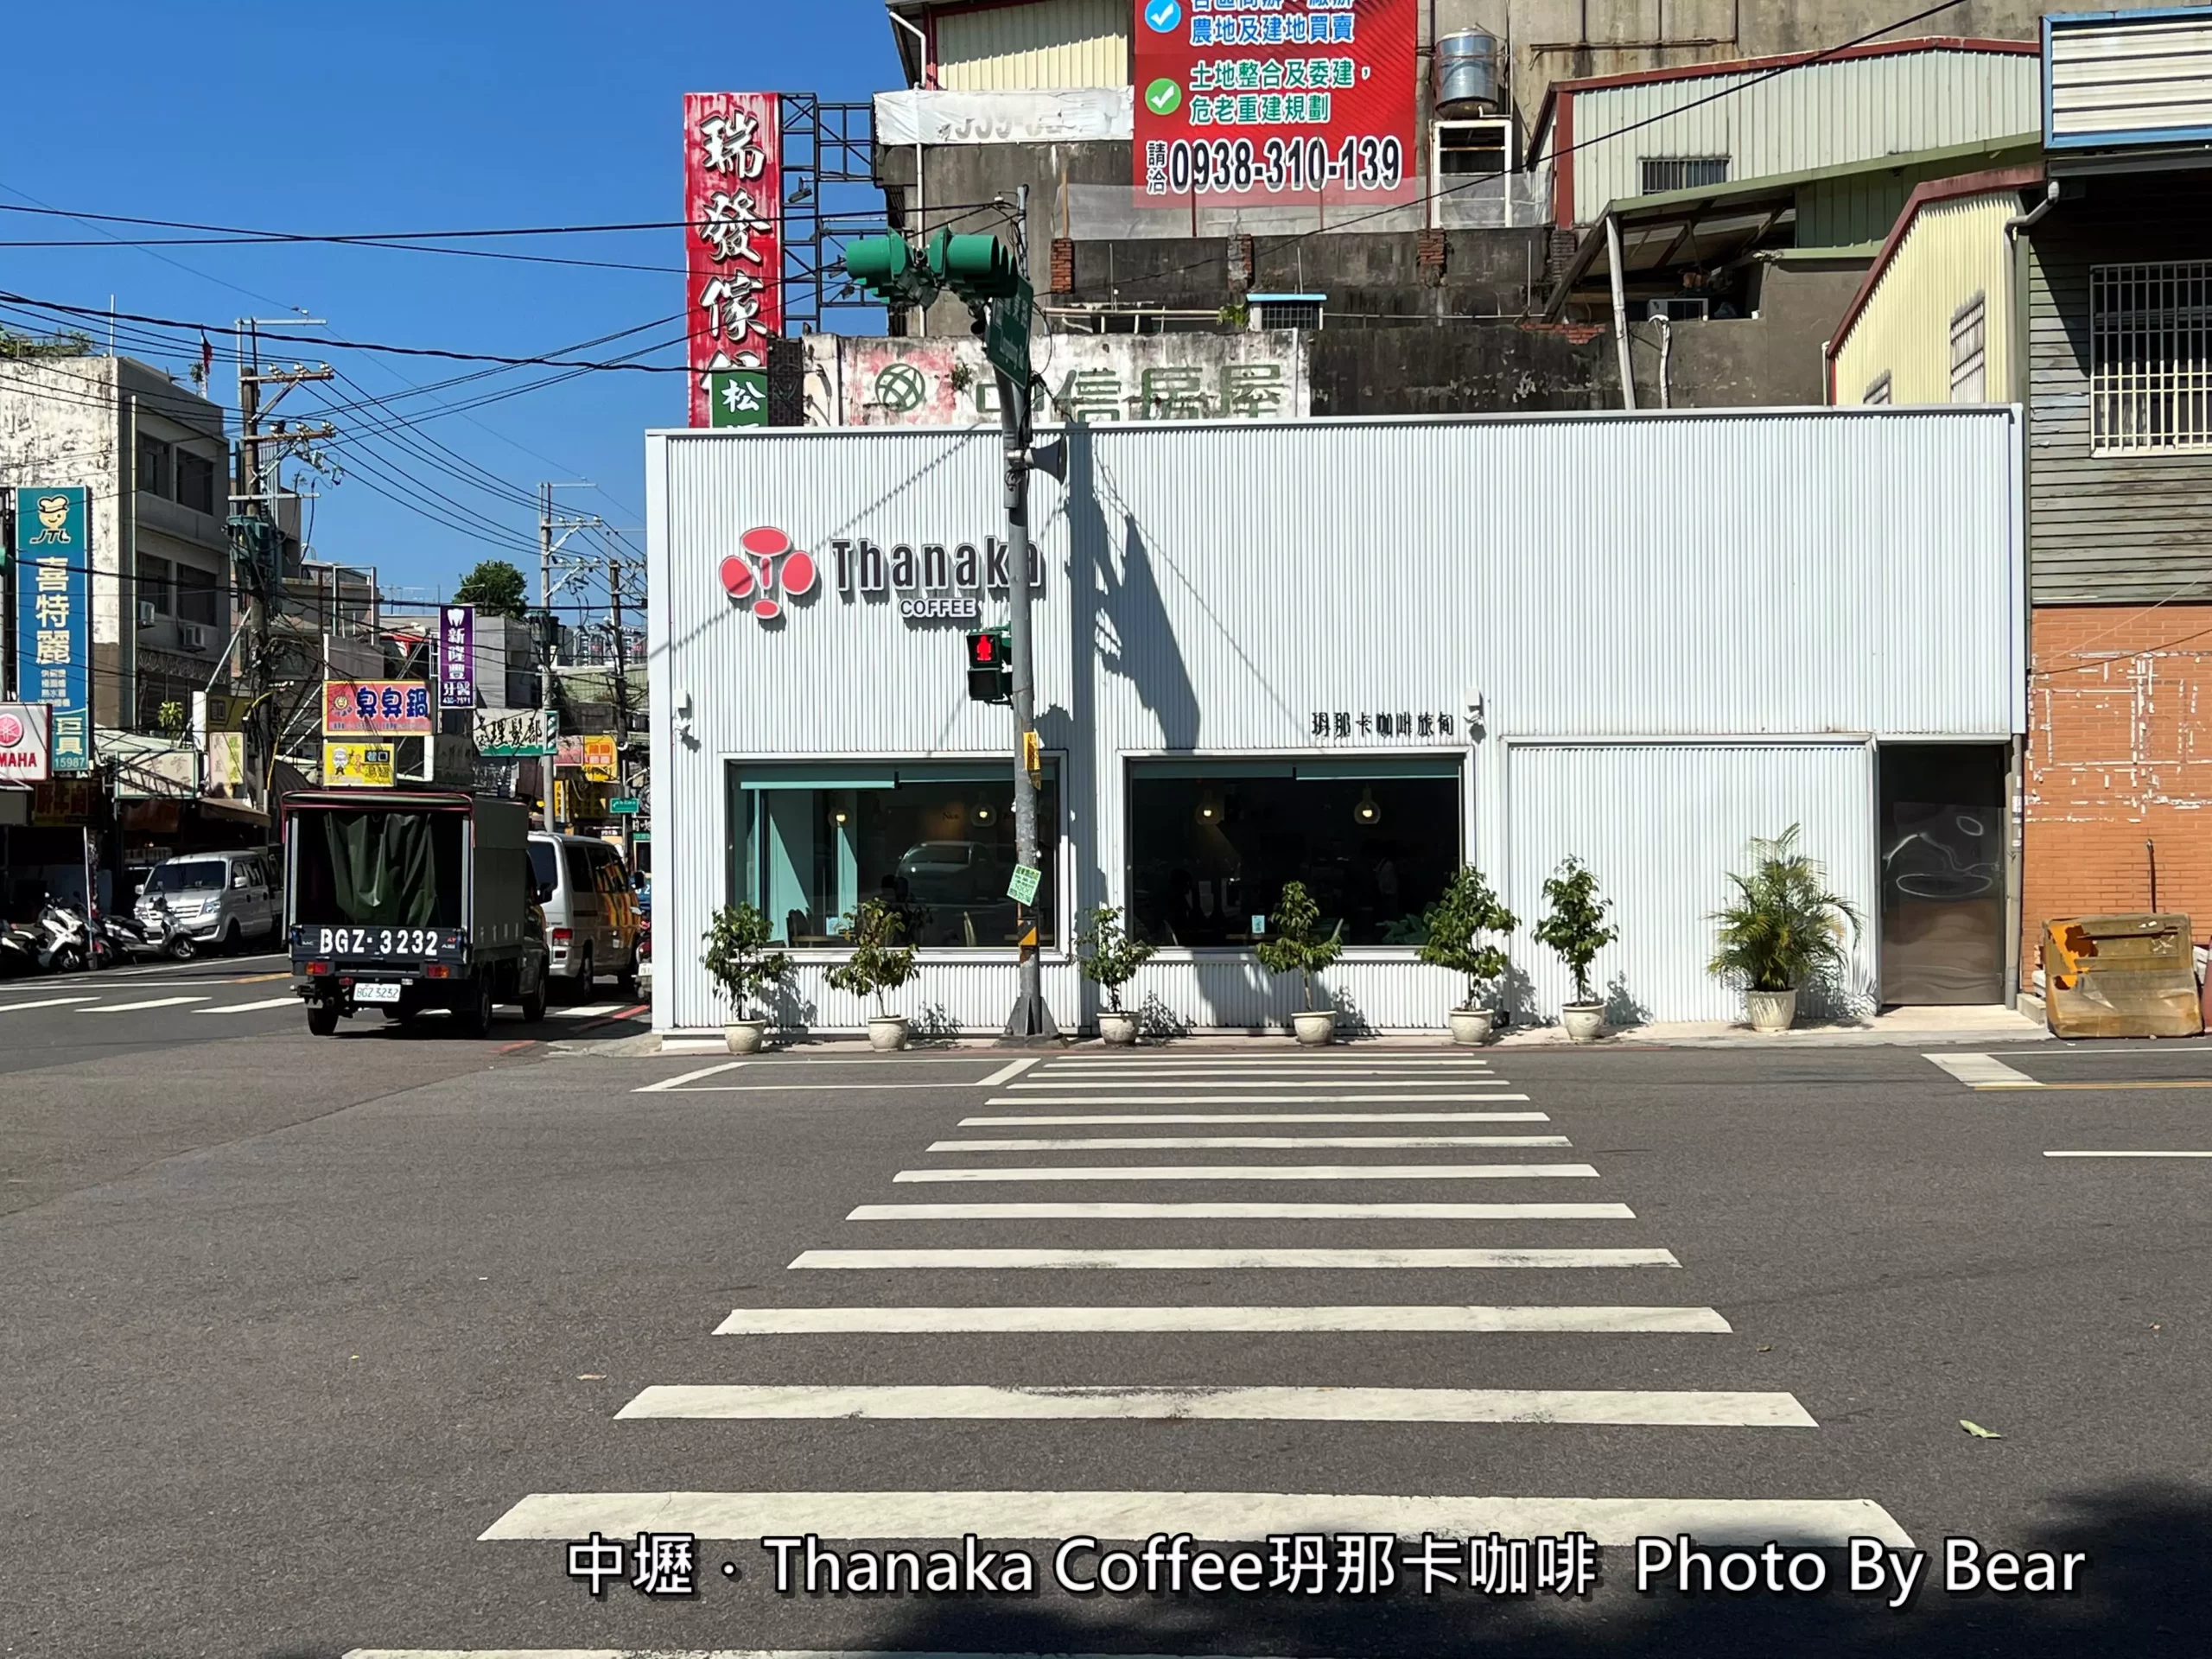 【中壢】「Thanaka Coffee玬那卡咖啡．來自緬甸的清新質感風特色咖啡館（米線/輕食甜點/近龍岡圓環.忠貞市場）」